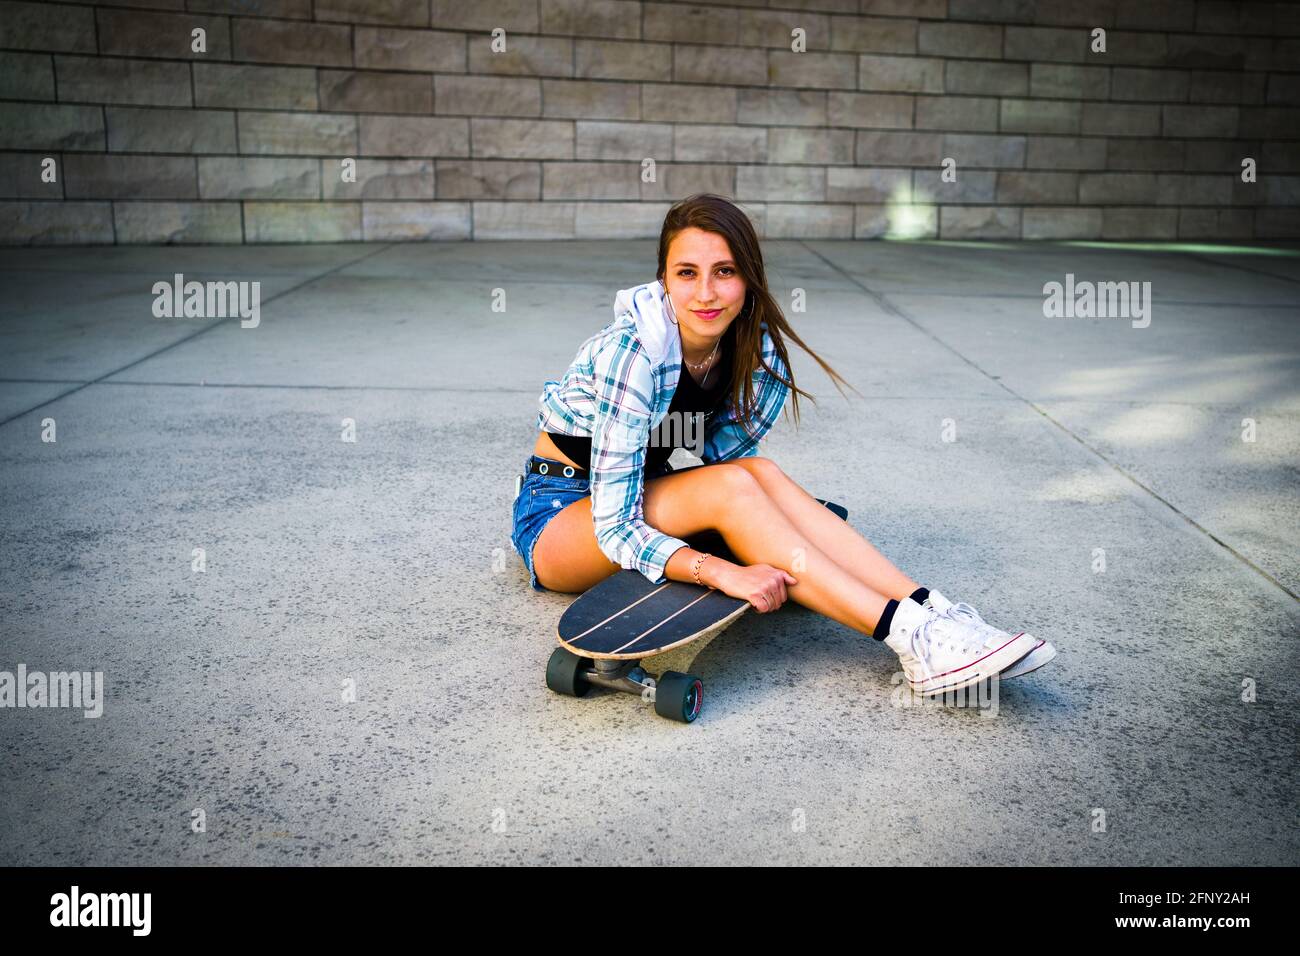 Jeune femme posant avec son skateboard dans un cadre urbain Banque D'Images